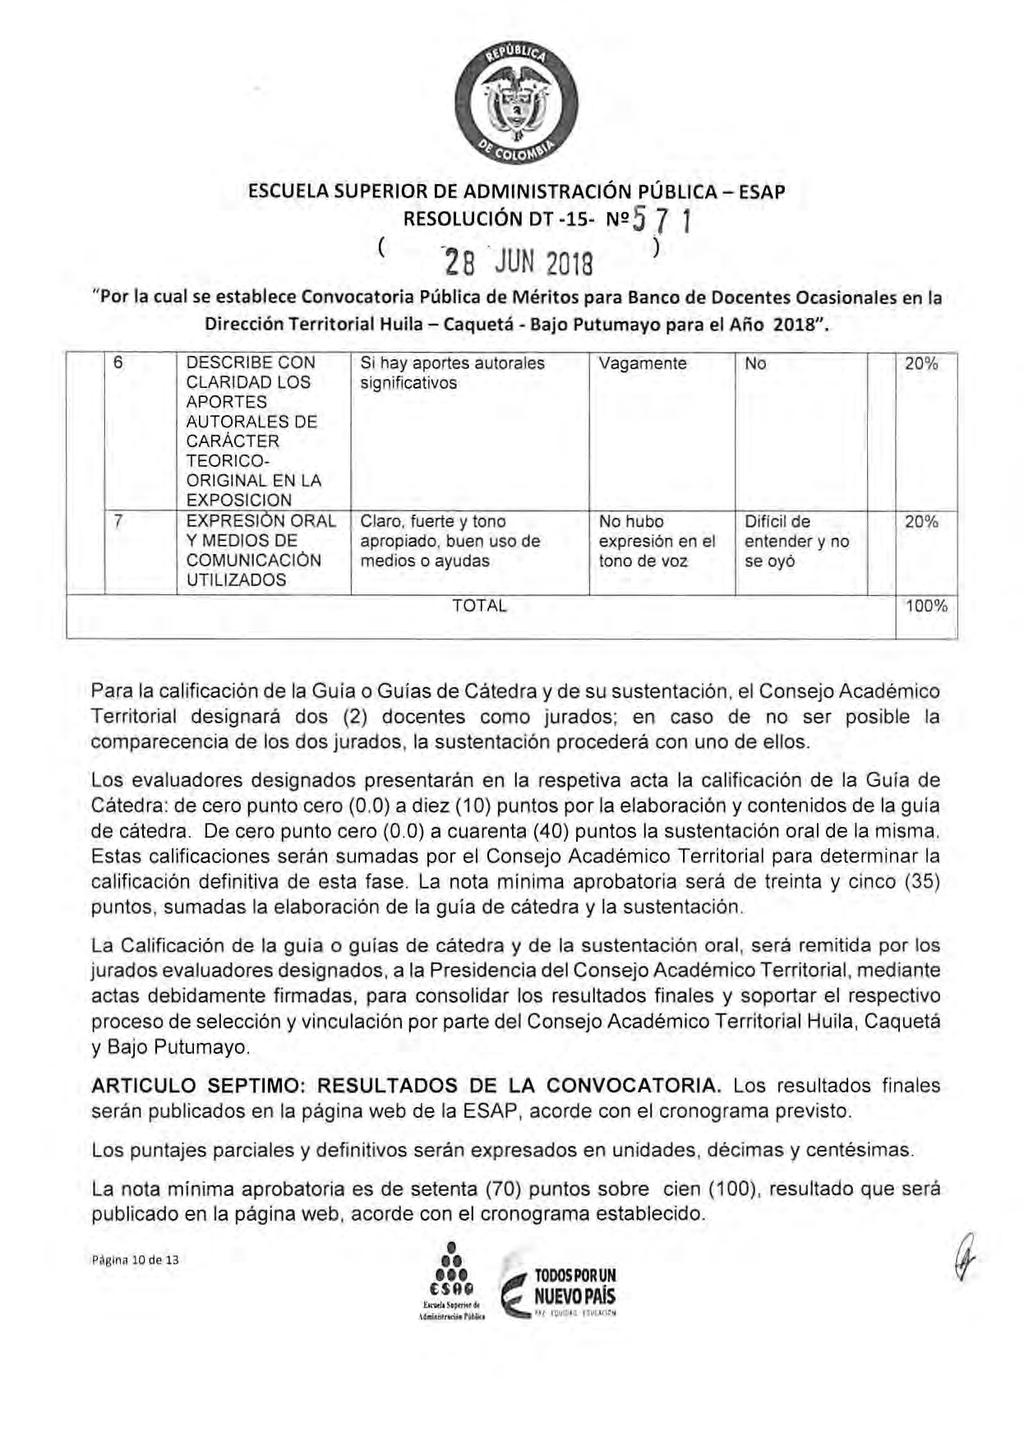 ESCUELA SUPERIOR DE ADMINISTRACIÓN PÚBLICA - ESAP ( RESOLUCIÓN DT -15- N2 5 7 1-2 8. JUN 2018 Dirección Territ orial Huila - Caquet á - Bajo Putumayo para el Año 2018".